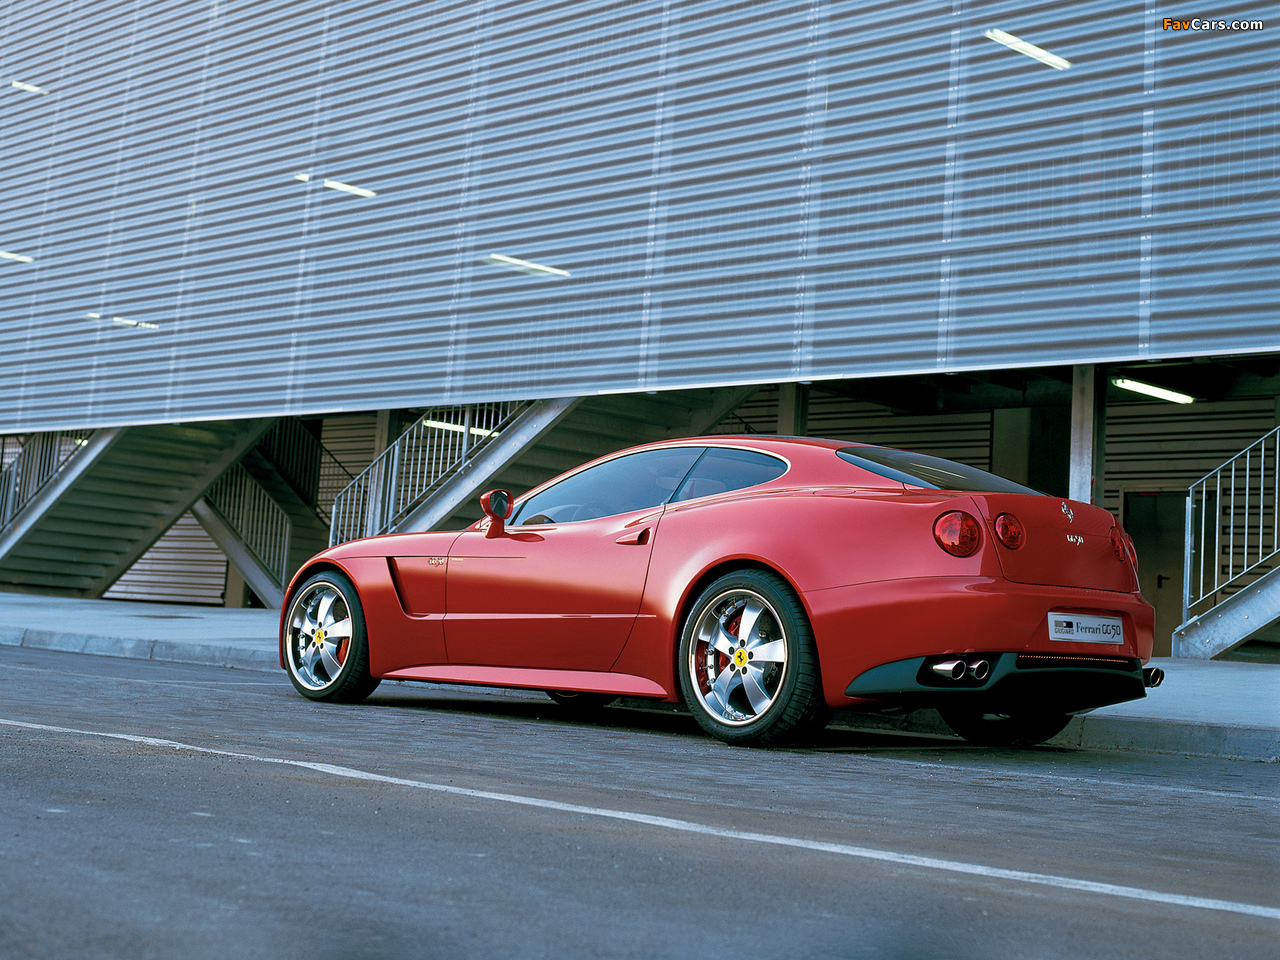 Pictures of Ferrari GG50 Concept by Giugiaro 2005 (1280 x 960)